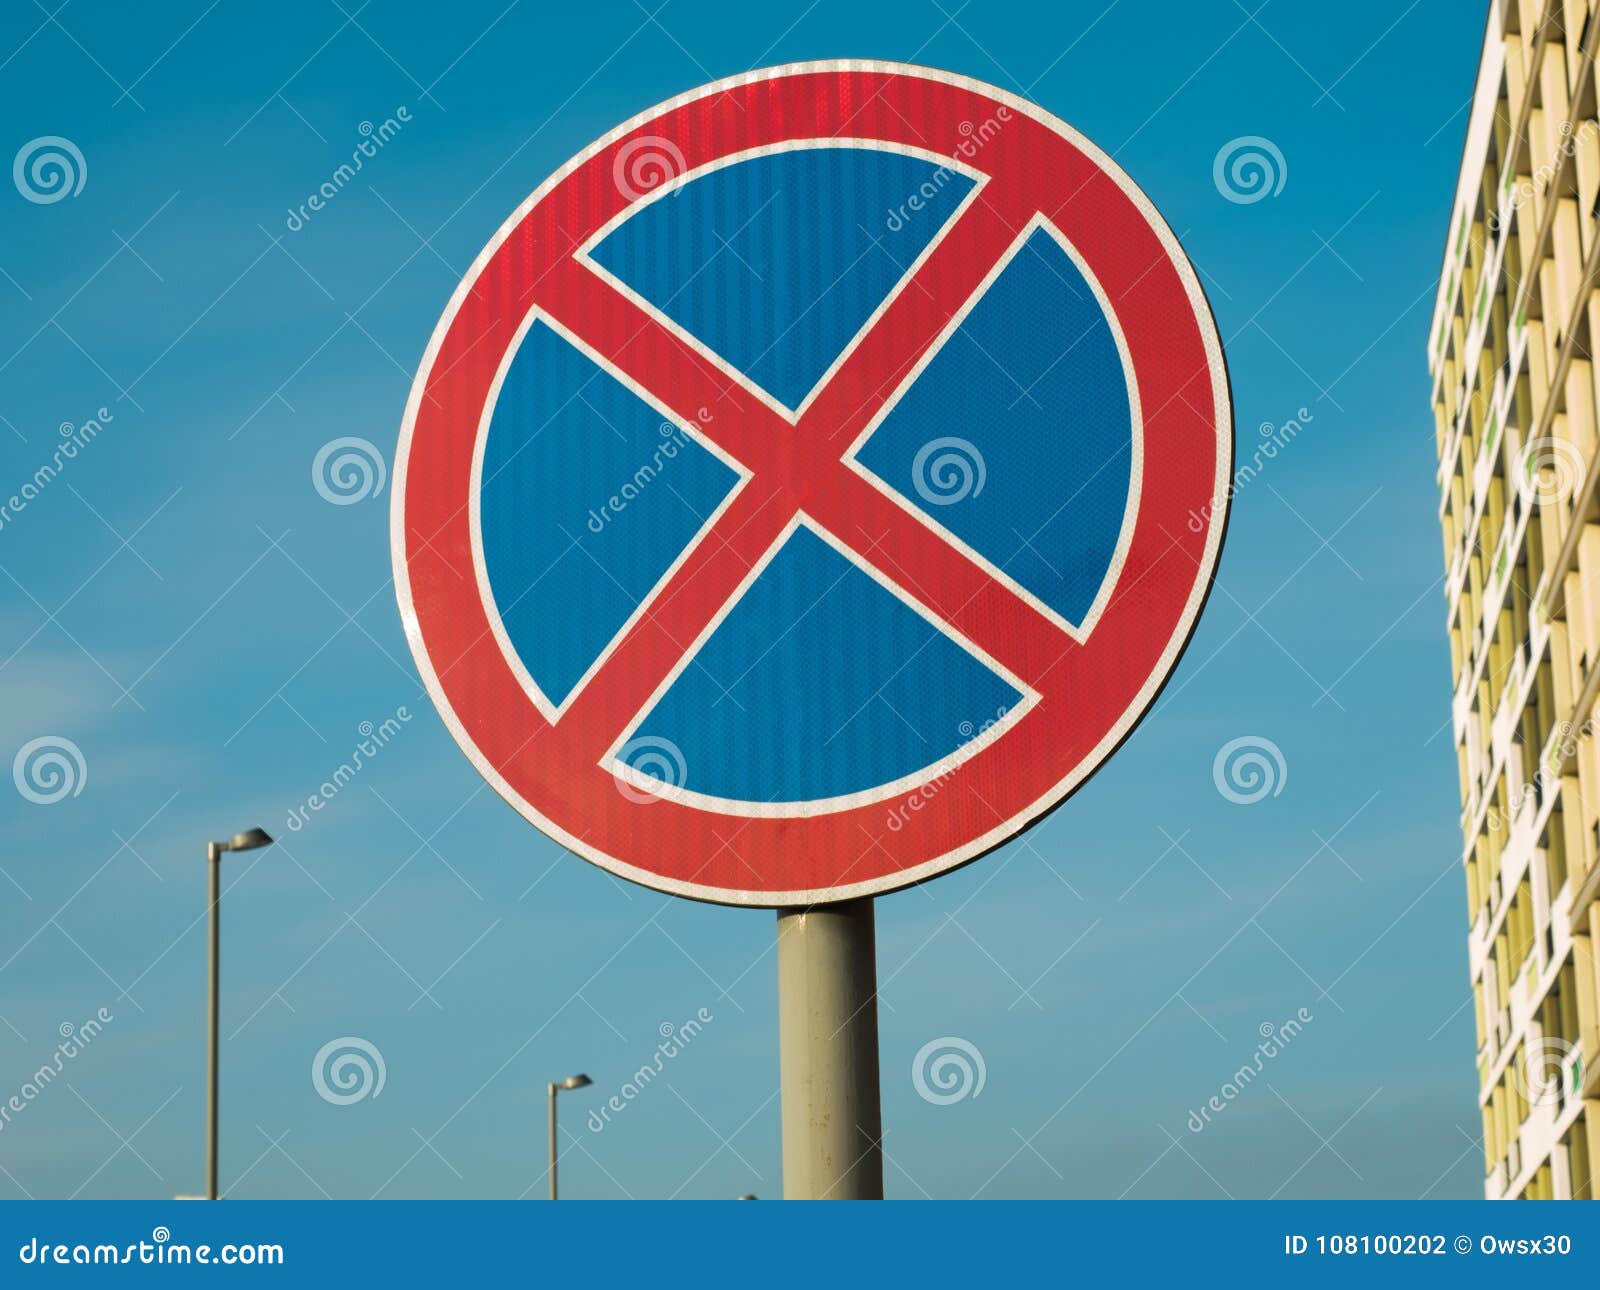 Biển báo giao thông hình tròn nền xanh: Tìm hiểu về các loại biển báo giao thông hình tròn nền xanh và ý nghĩa của chúng. Những biển báo này đóng vai trò quan trọng trong việc chỉ dẫn các tình huống đường bộ phổ biến, giúp bạn tránh được tai nạn giao thông.